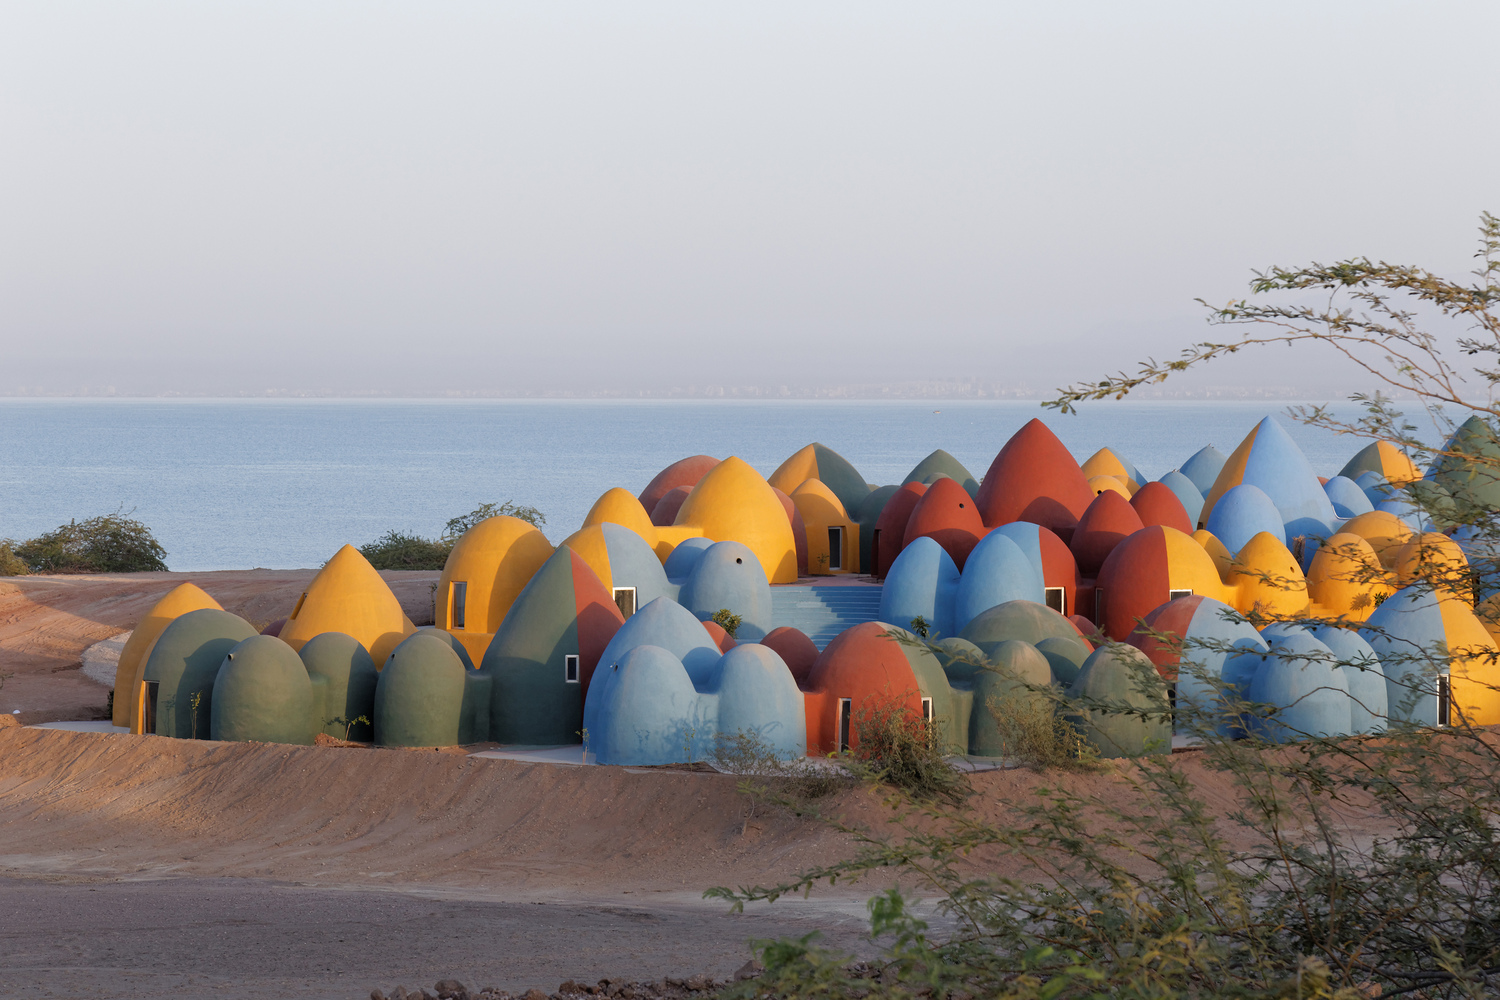 Chiêm ngưỡng ngôi làng với những mái vòm đầy màu sắc trên đảo Hormuz, Iran - Ảnh 3